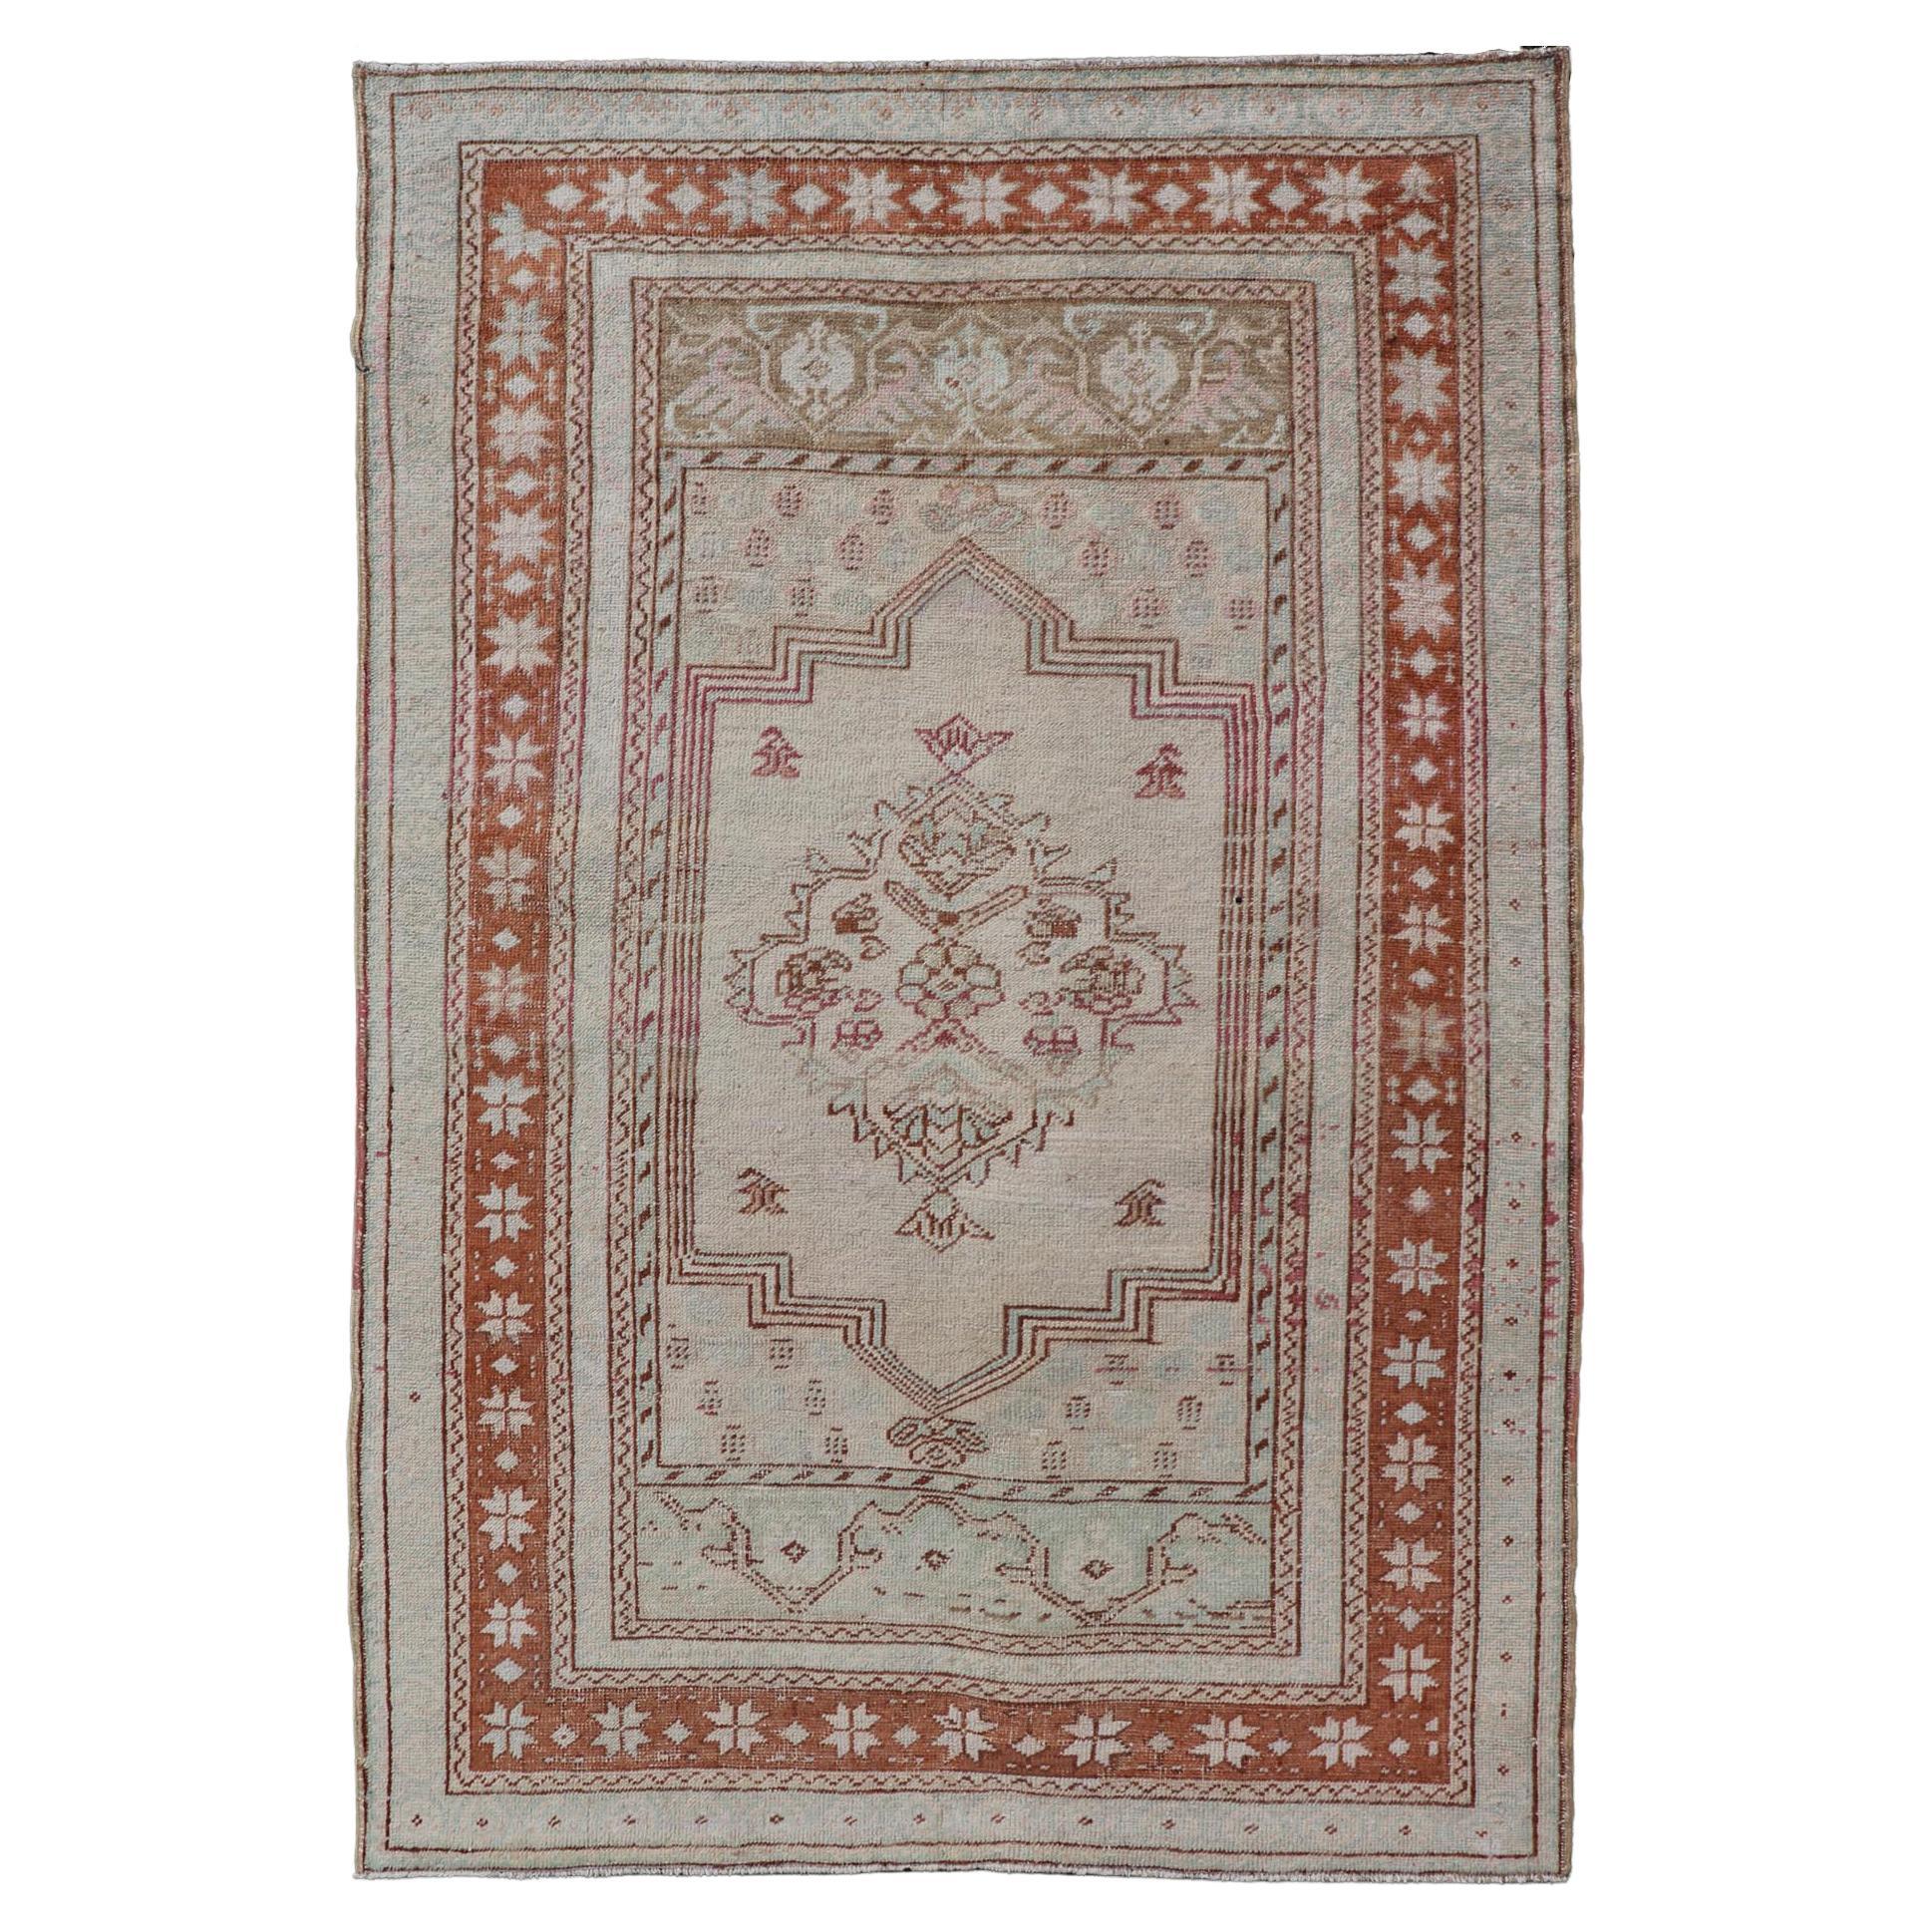 Türkischer Oushak-Teppich im Vintage-Stil mit Medaillonmuster in Taupe, Hellgrün und Braun